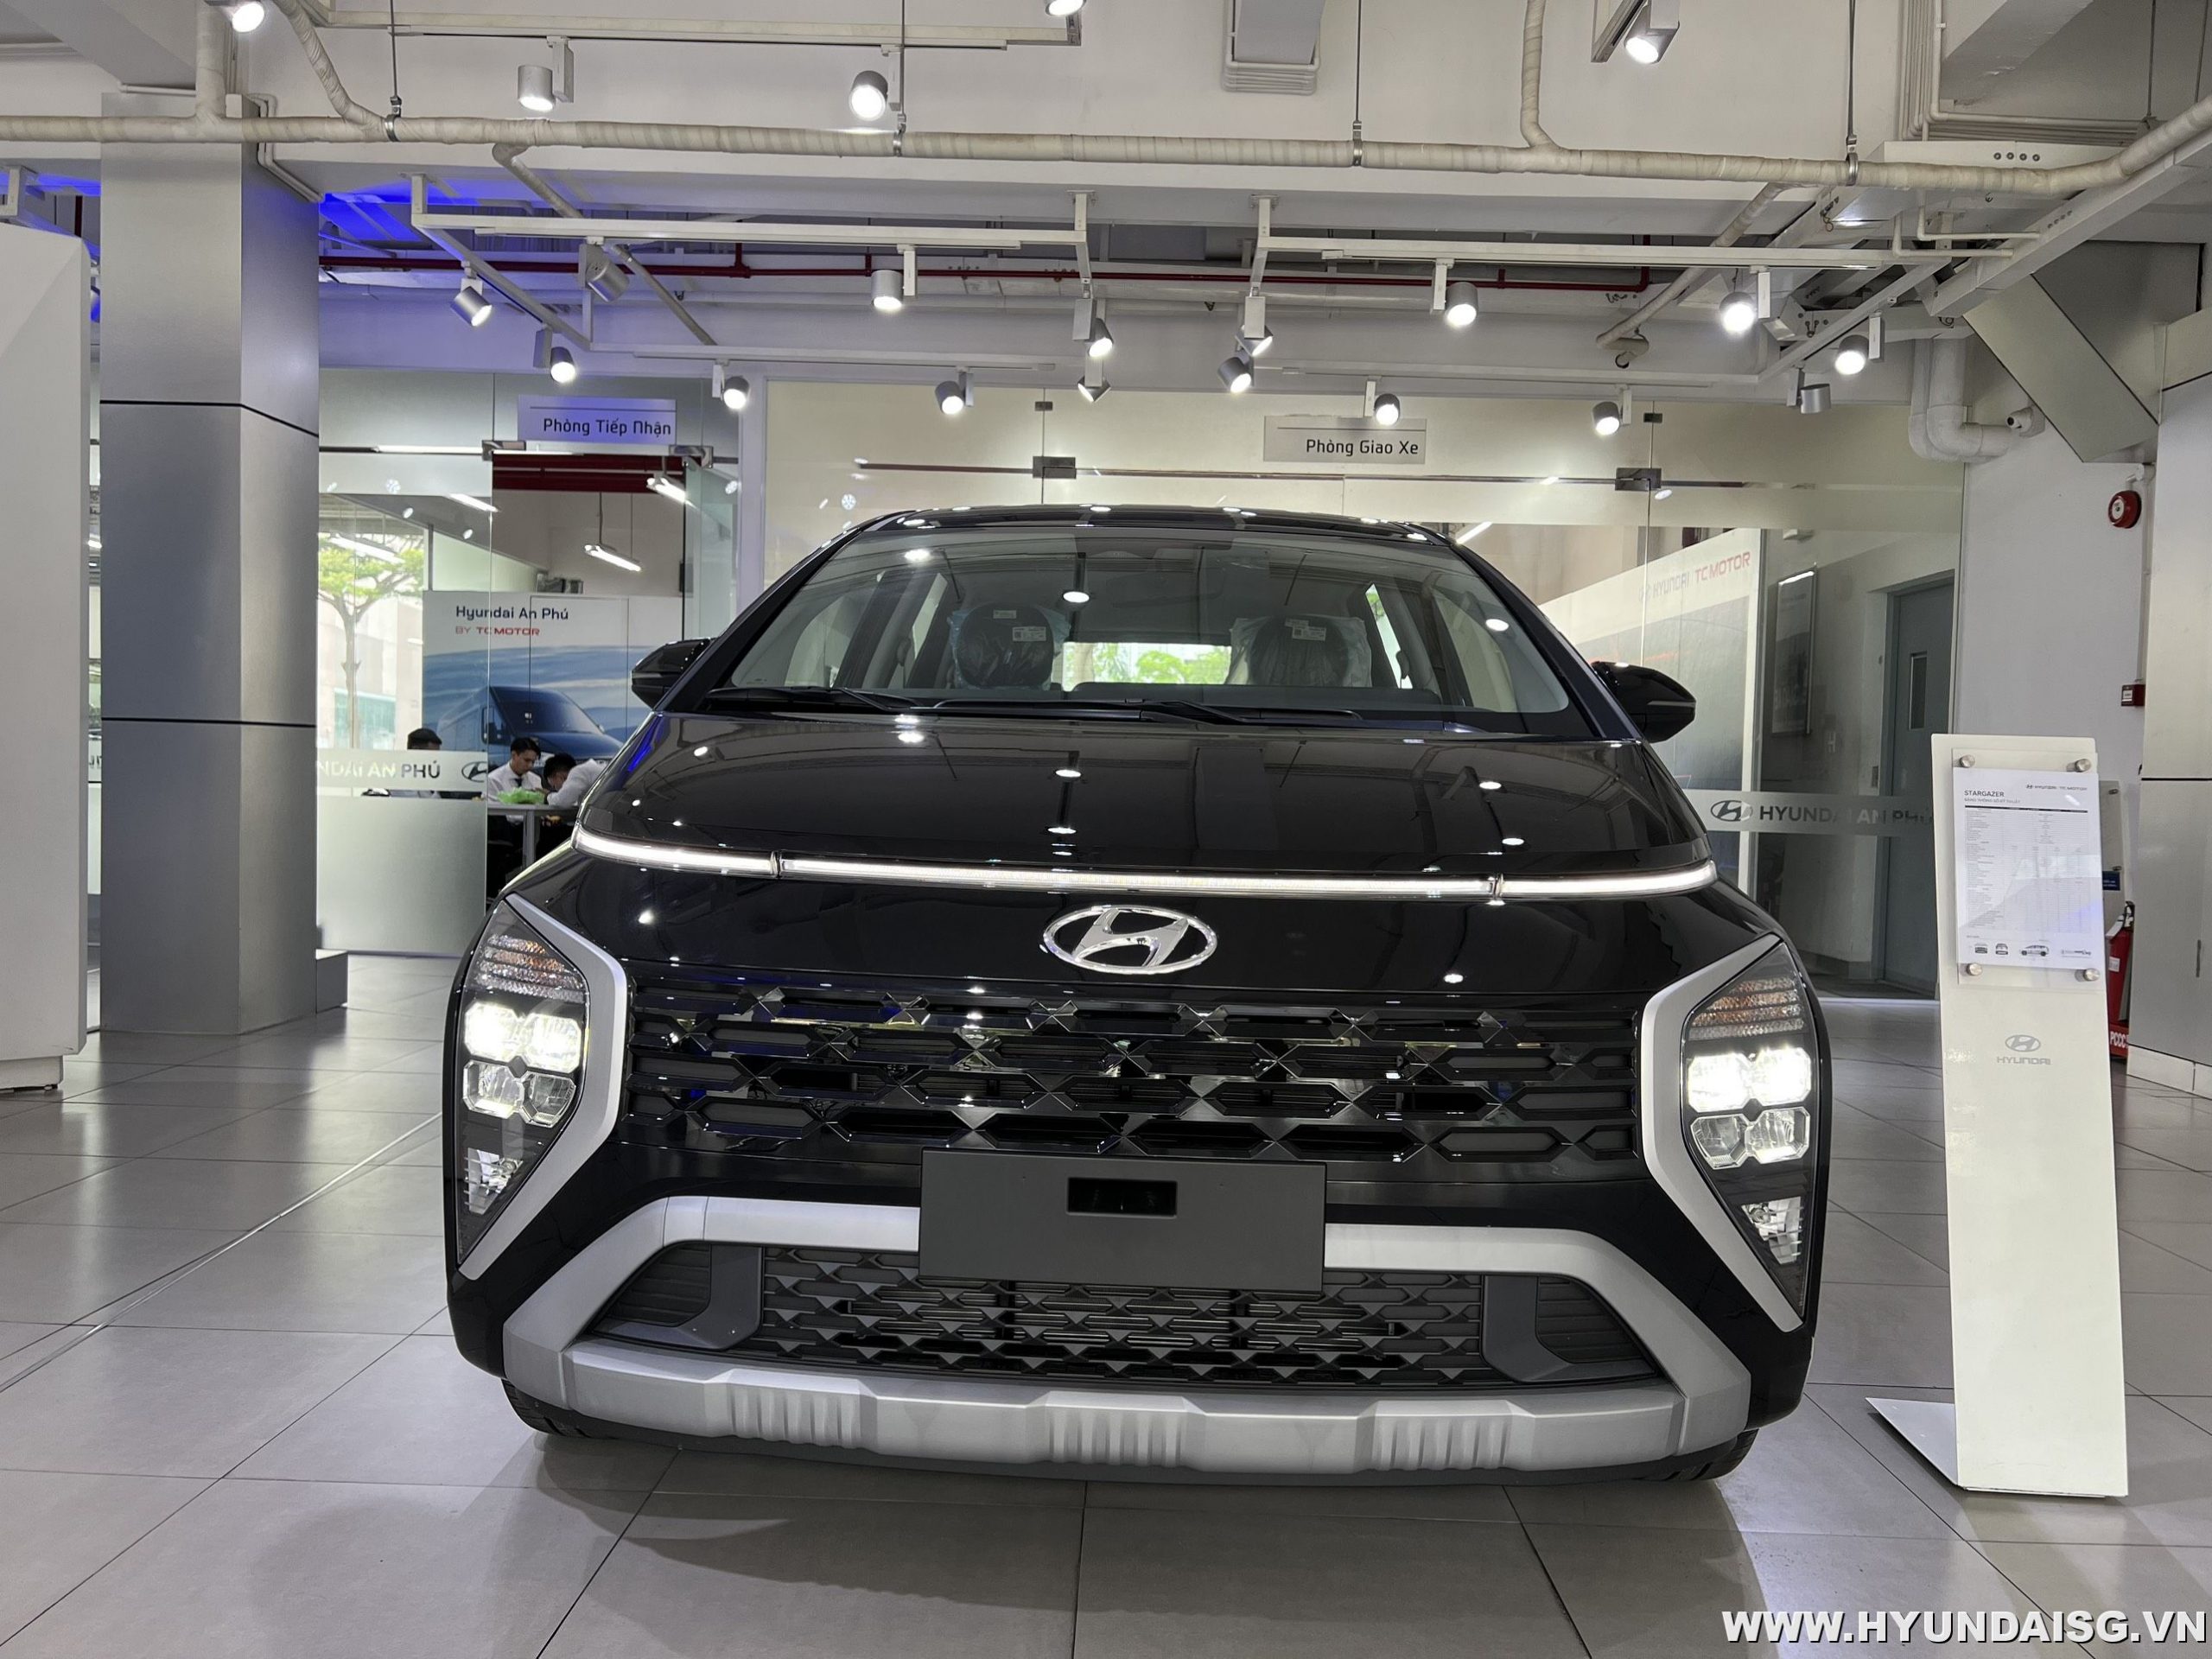 Bảng giá và ưu đãi xe Hyundai tháng 11/2022